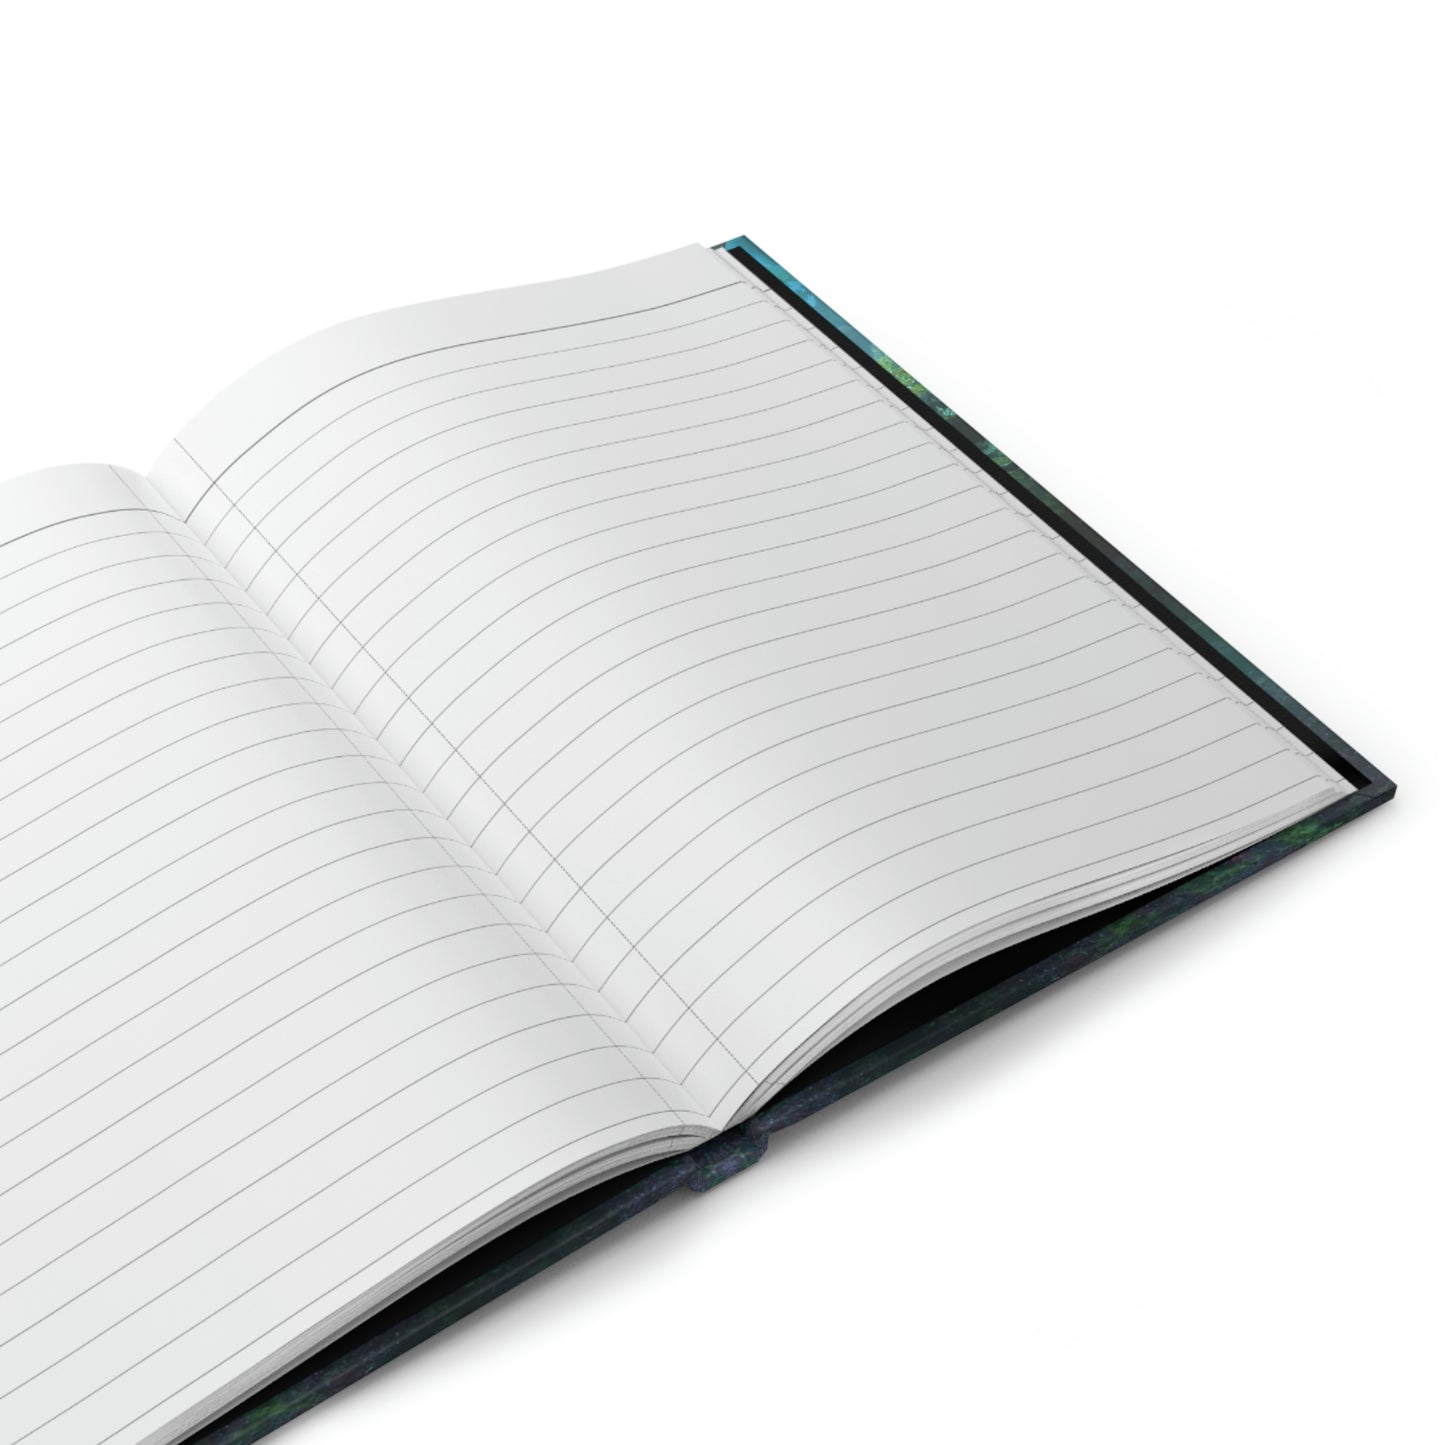 The Watcher Notebook Book Hardcover Journal Matte